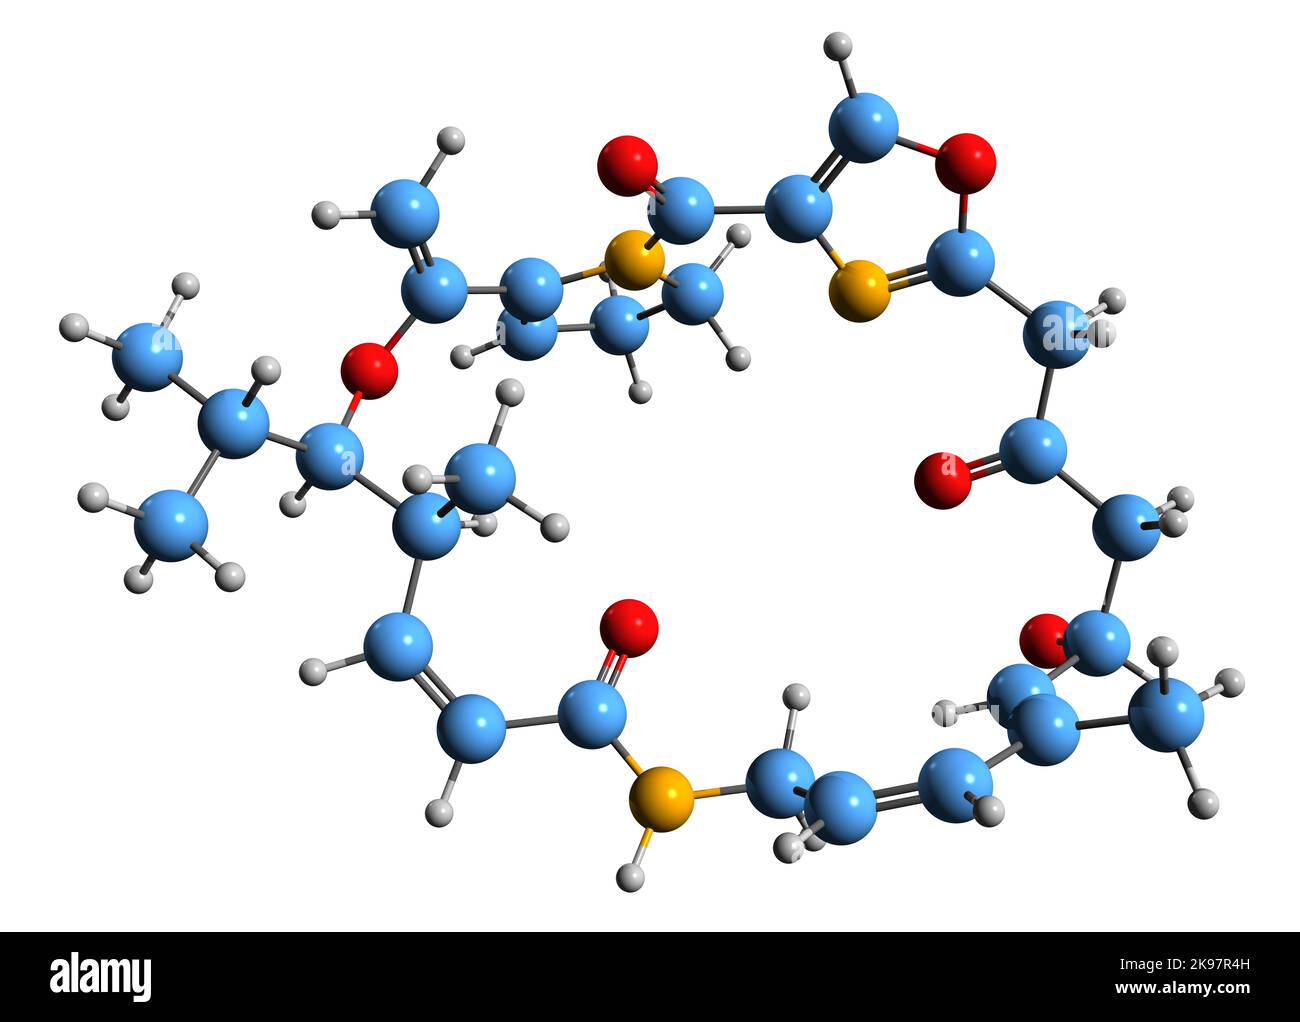 3D Bild der Skelettformel Virginiamicin - molekulare chemische Struktur des Streptogramin-Antibiotikums, isoliert auf weißem Hintergrund Stockfoto